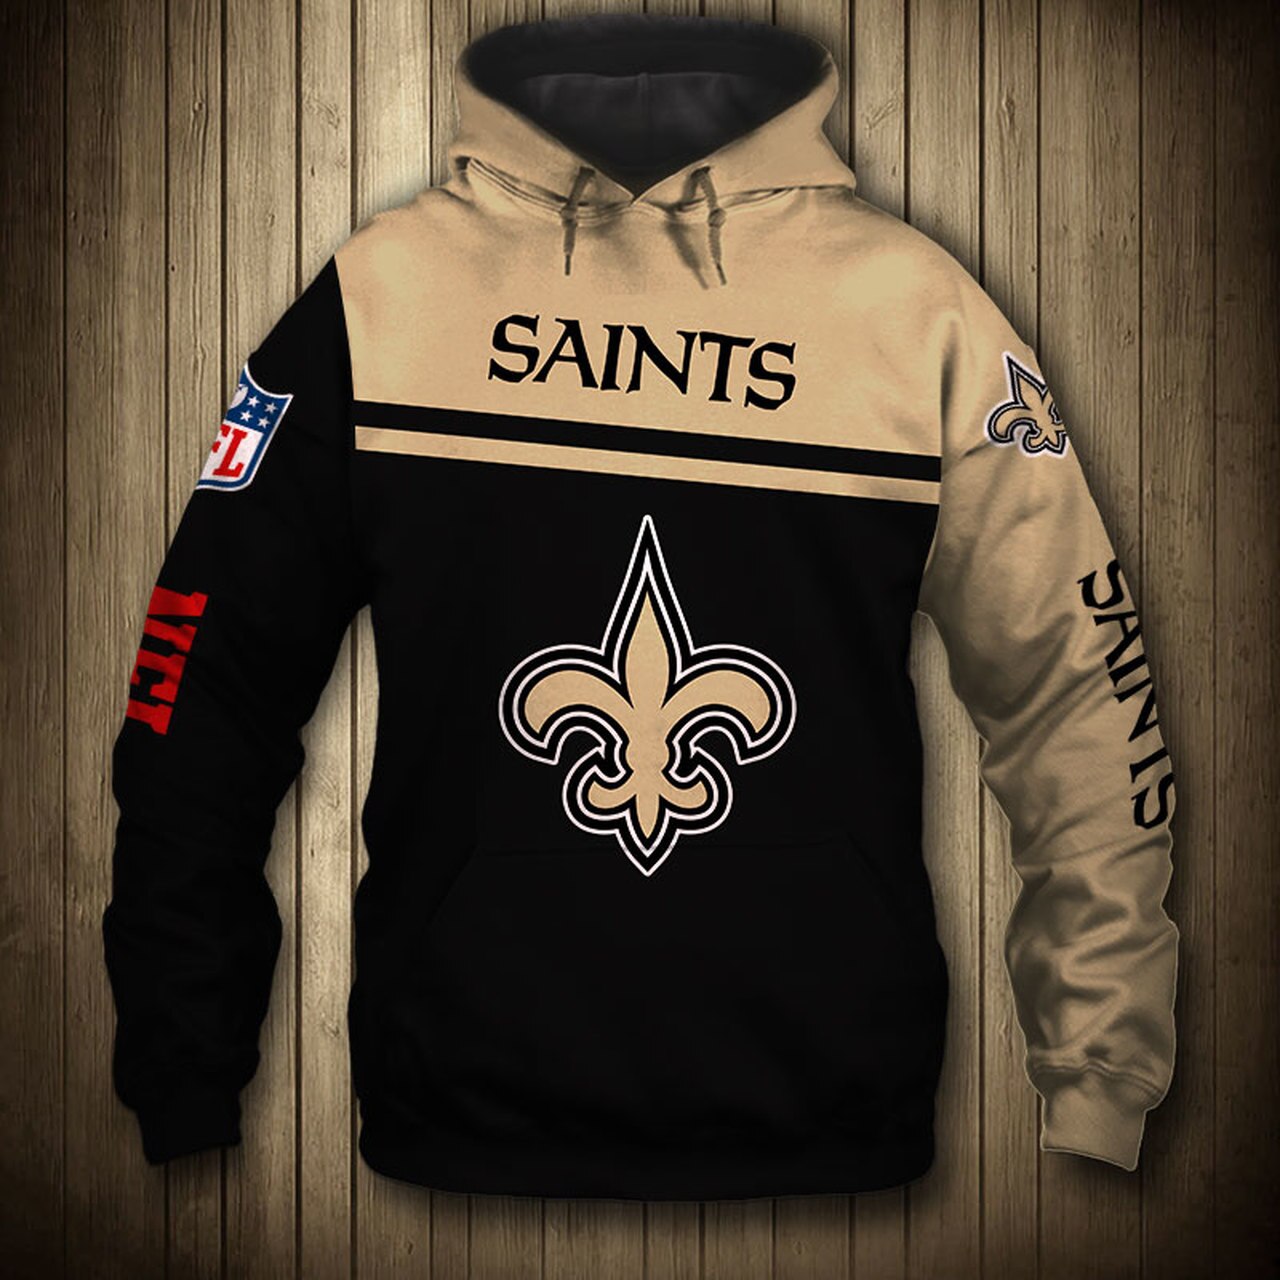 New Orleans Saints 3D Printed Hoodie For Big Fans - Saintsfanstore.com